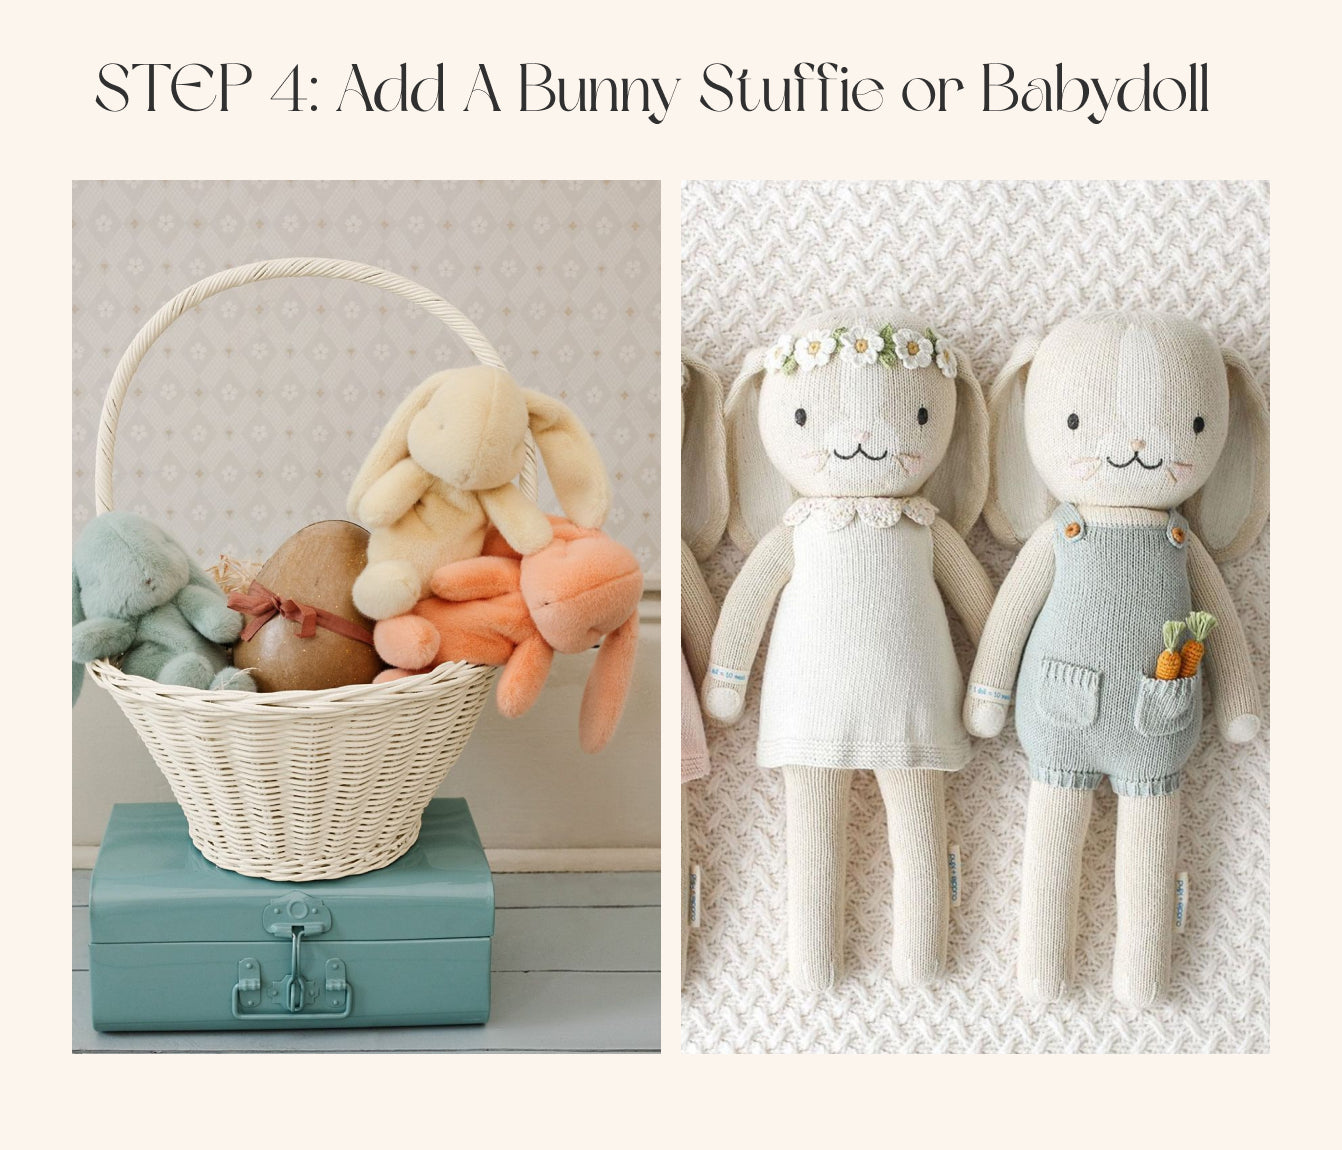 Step 4: Add Bunny Stuffie or Babydoll